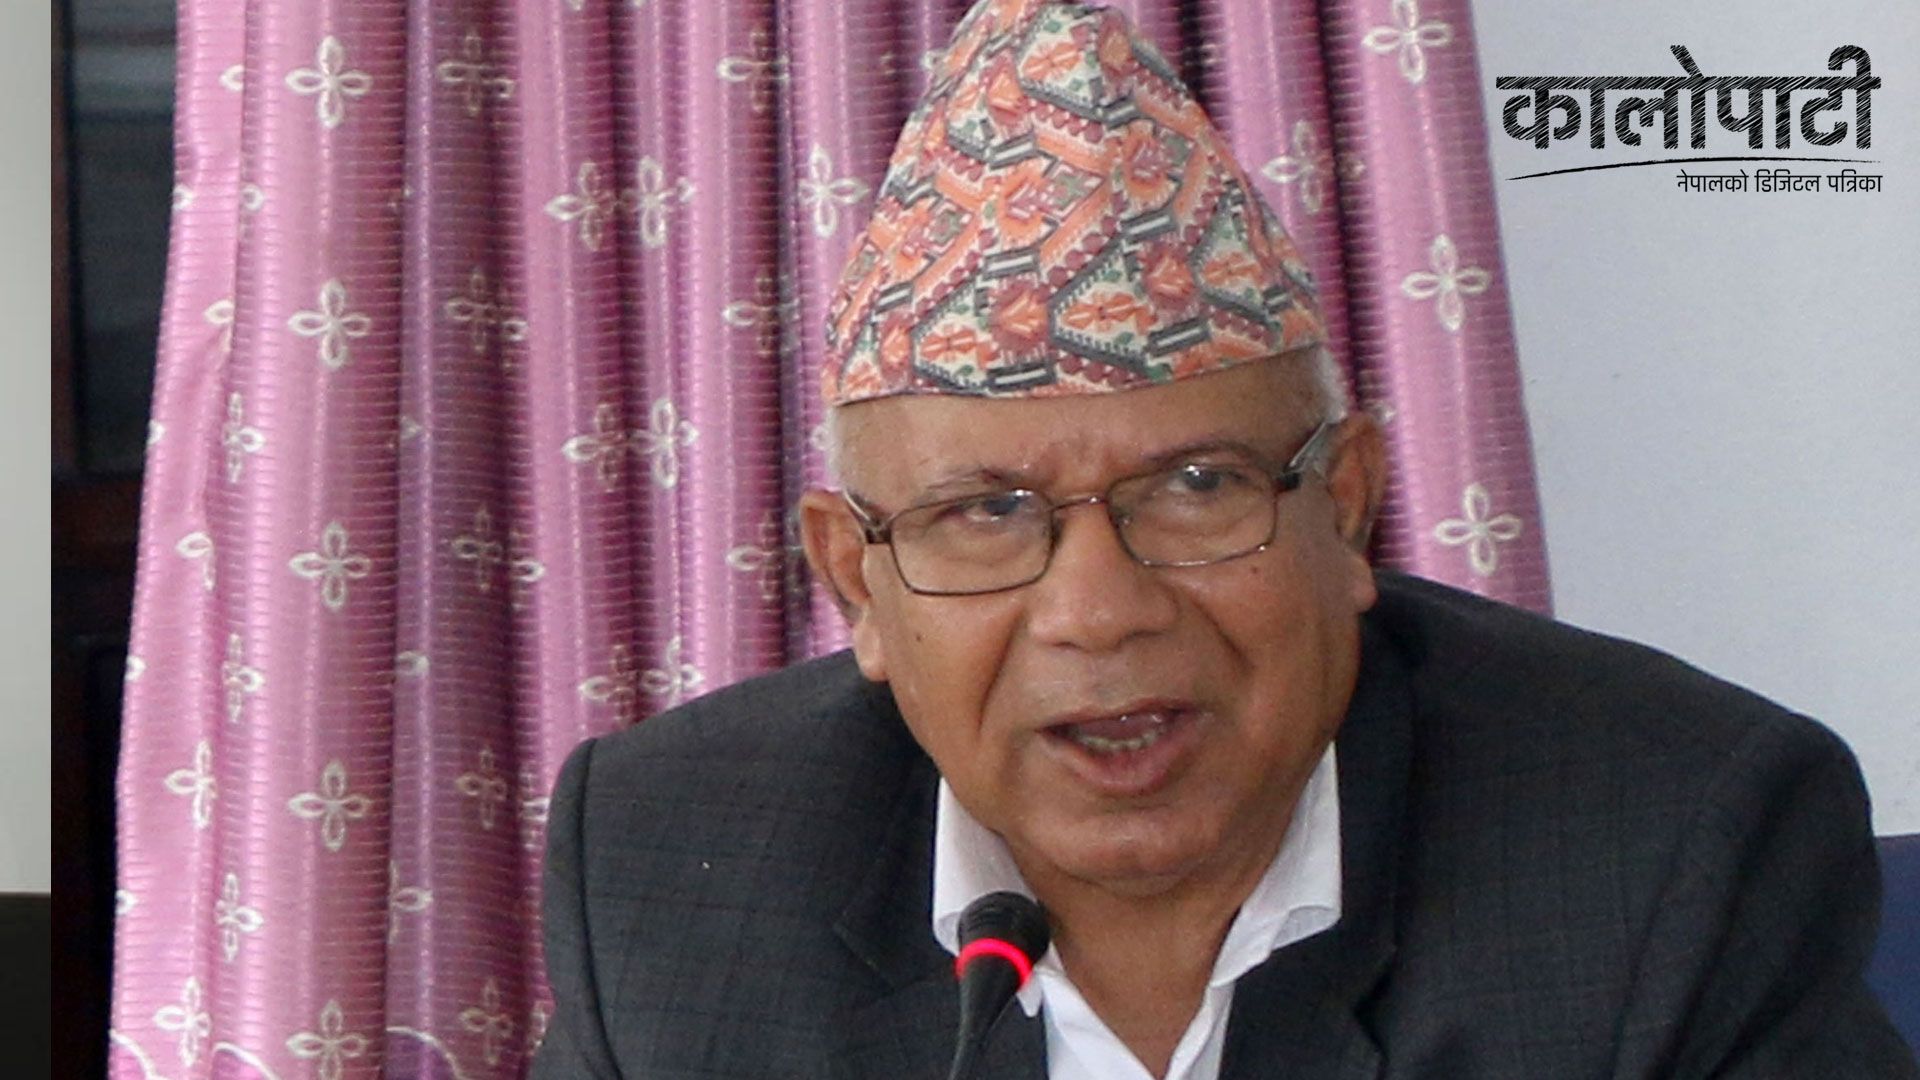 कर्णालीमा प्रदेश सभा सदस्य पद गुमेका साथीहरुलाई फेरि जिताएर ल्याउँछौं  : माधव नेपाल